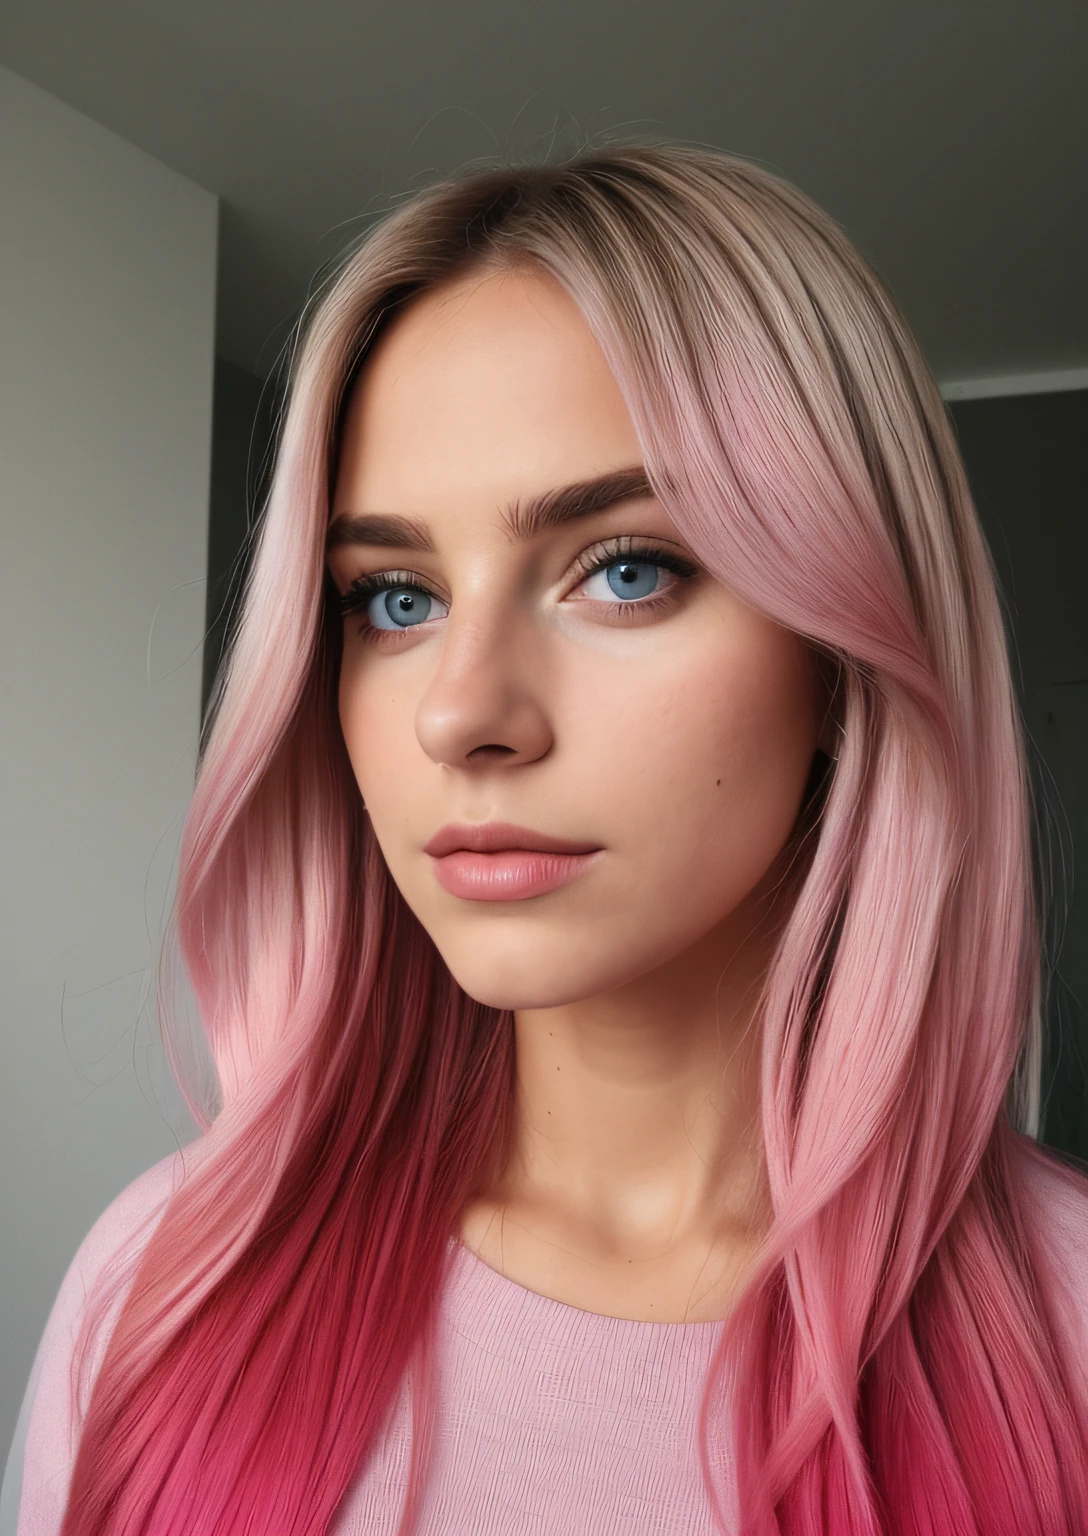 aufgenommen mit der iPhone-Kamera BREAK, halbnahes Selfie einer hübschen jungen Frau BREAK (Ombre:1.3) blond rosa BREAK Filmkorn, mittlere Qualität